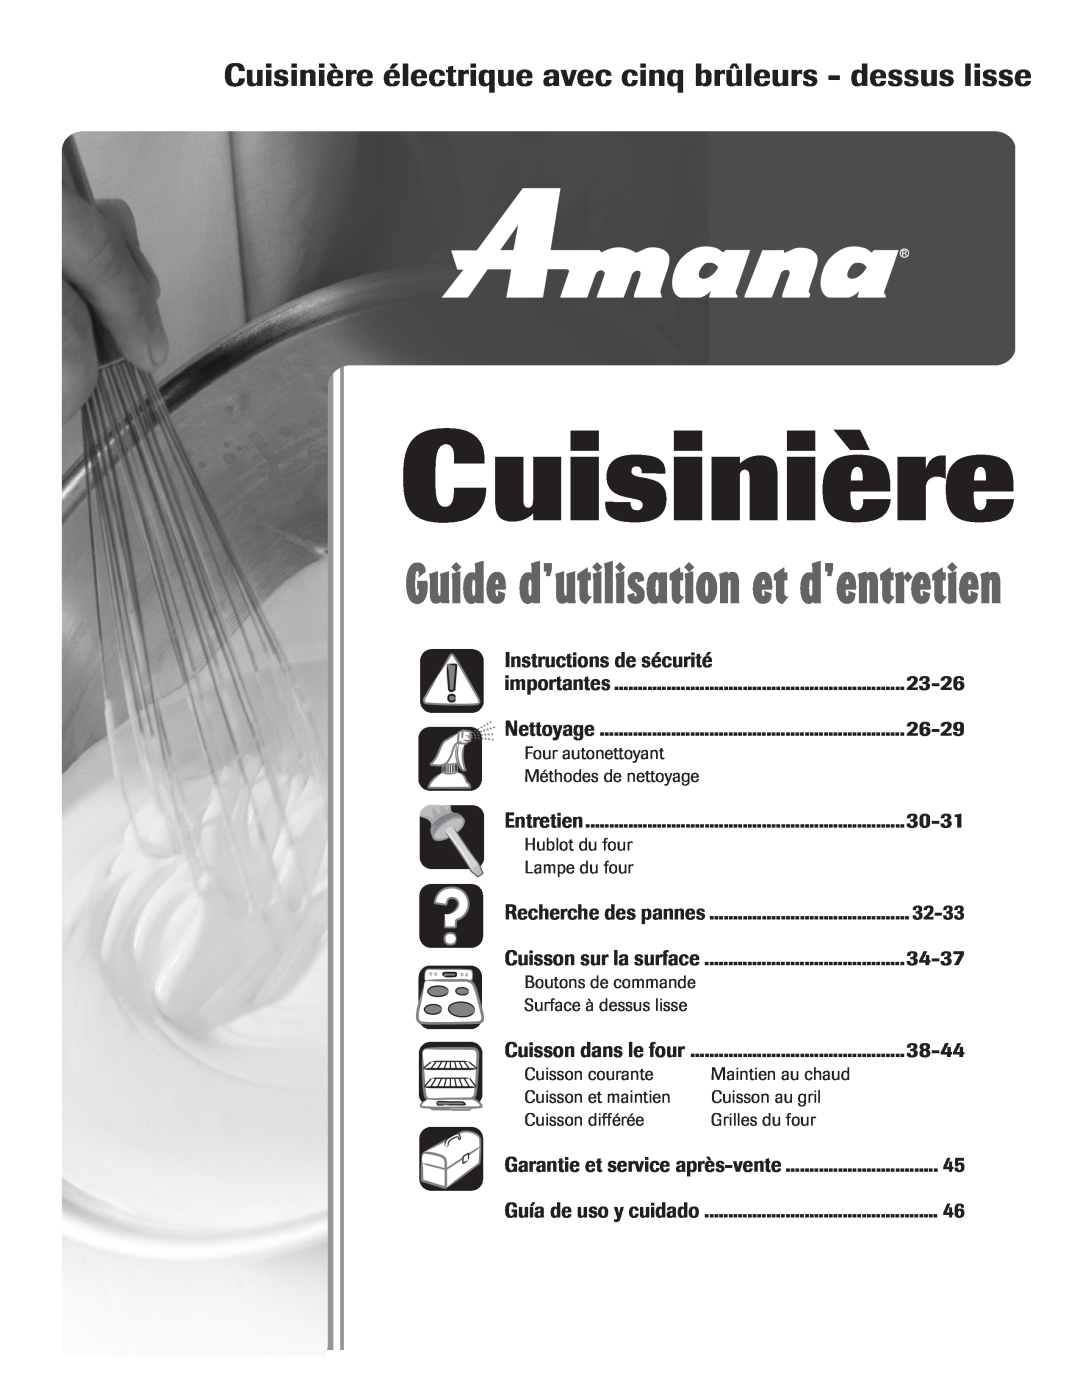 Amana Electric Smoothtop Range Instructions de sécurité, 23-26, 26-29, 30-31, 32-33, 34-37, 38-44, Cuisinière 